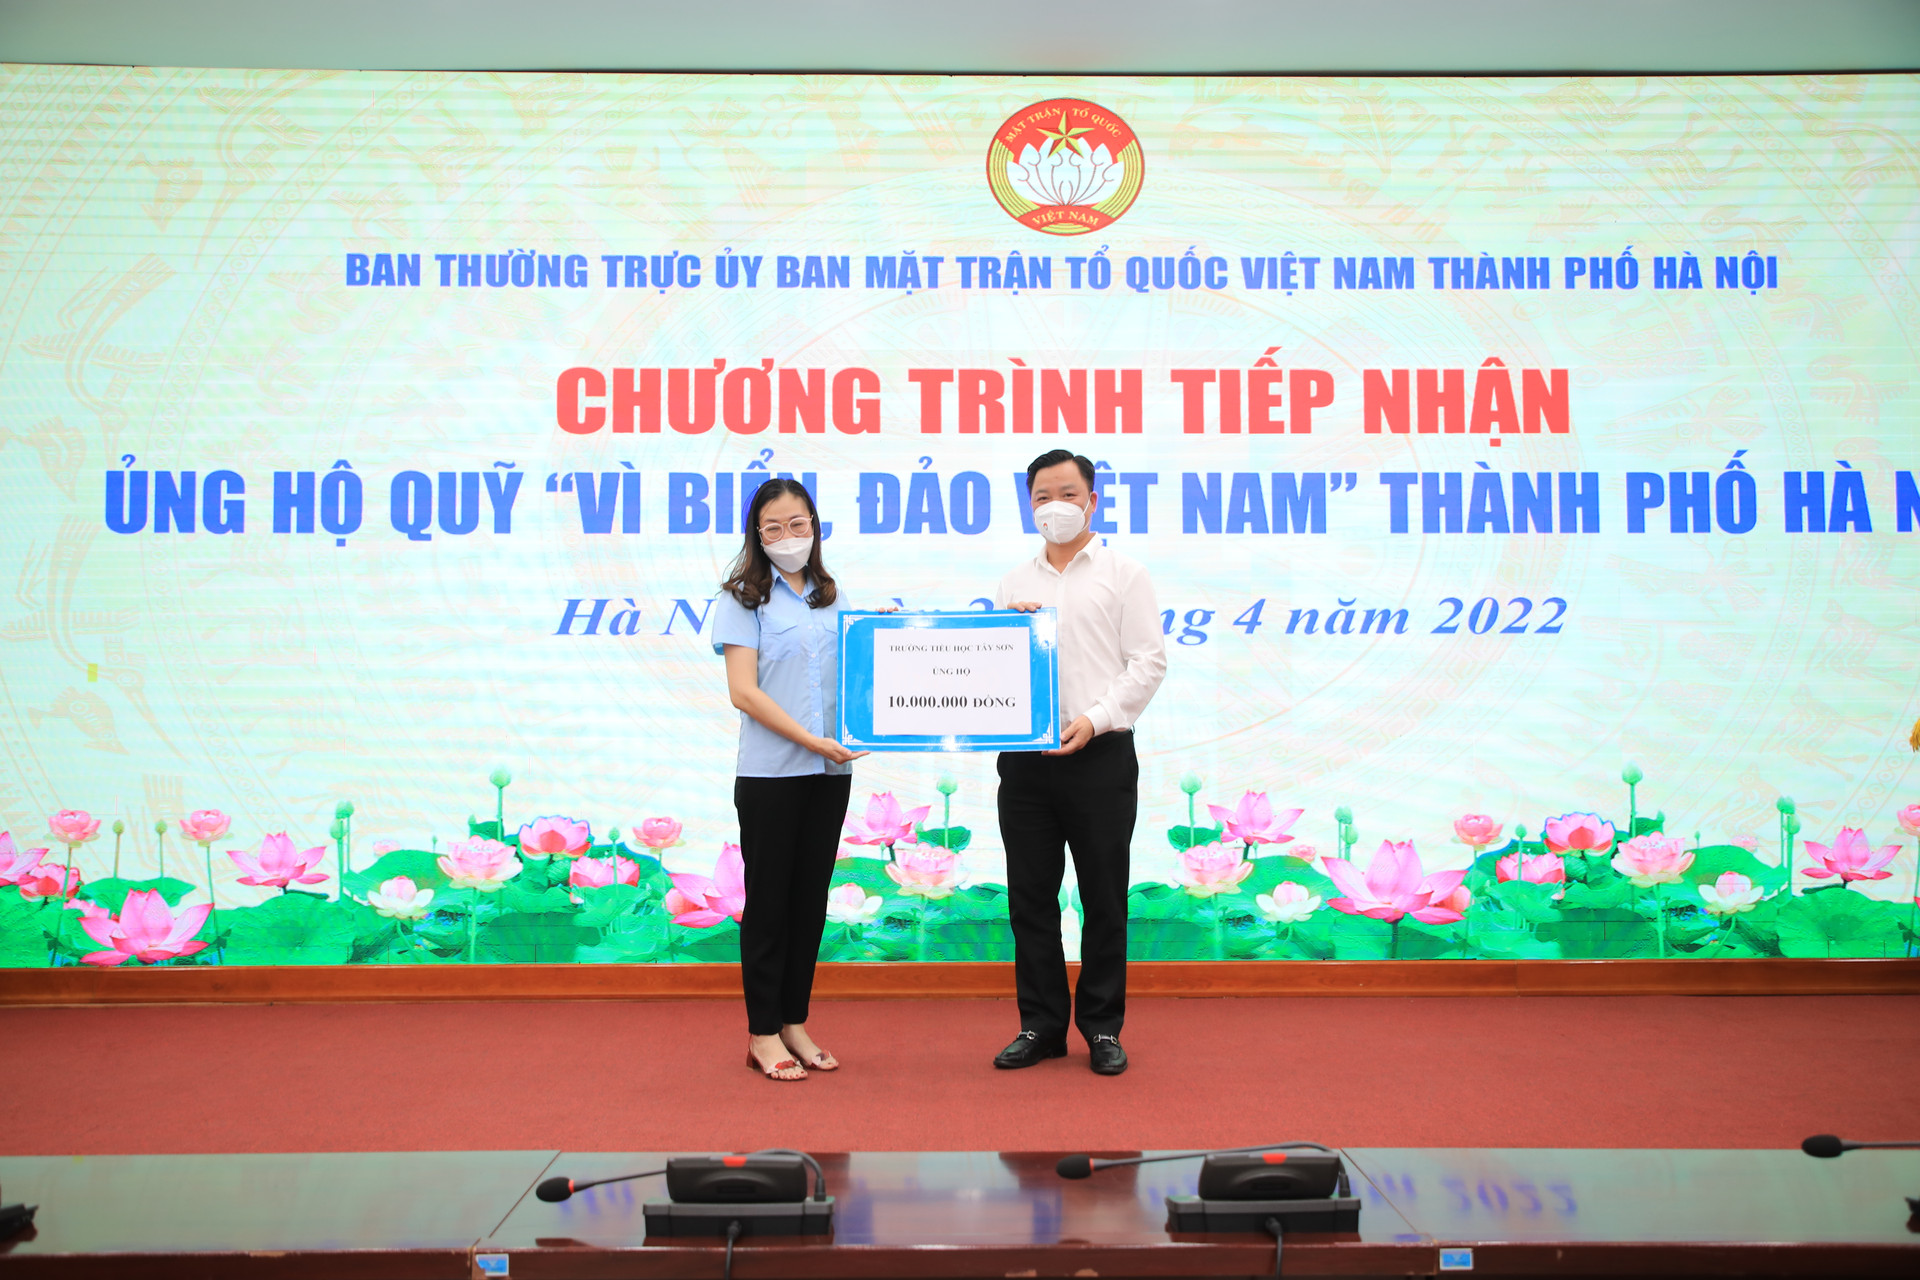 Phó Chủ tịch Nguyễn Sỹ Trường tiếp nhận ủng hộ từ Trường tiểu học Tây Sơn.